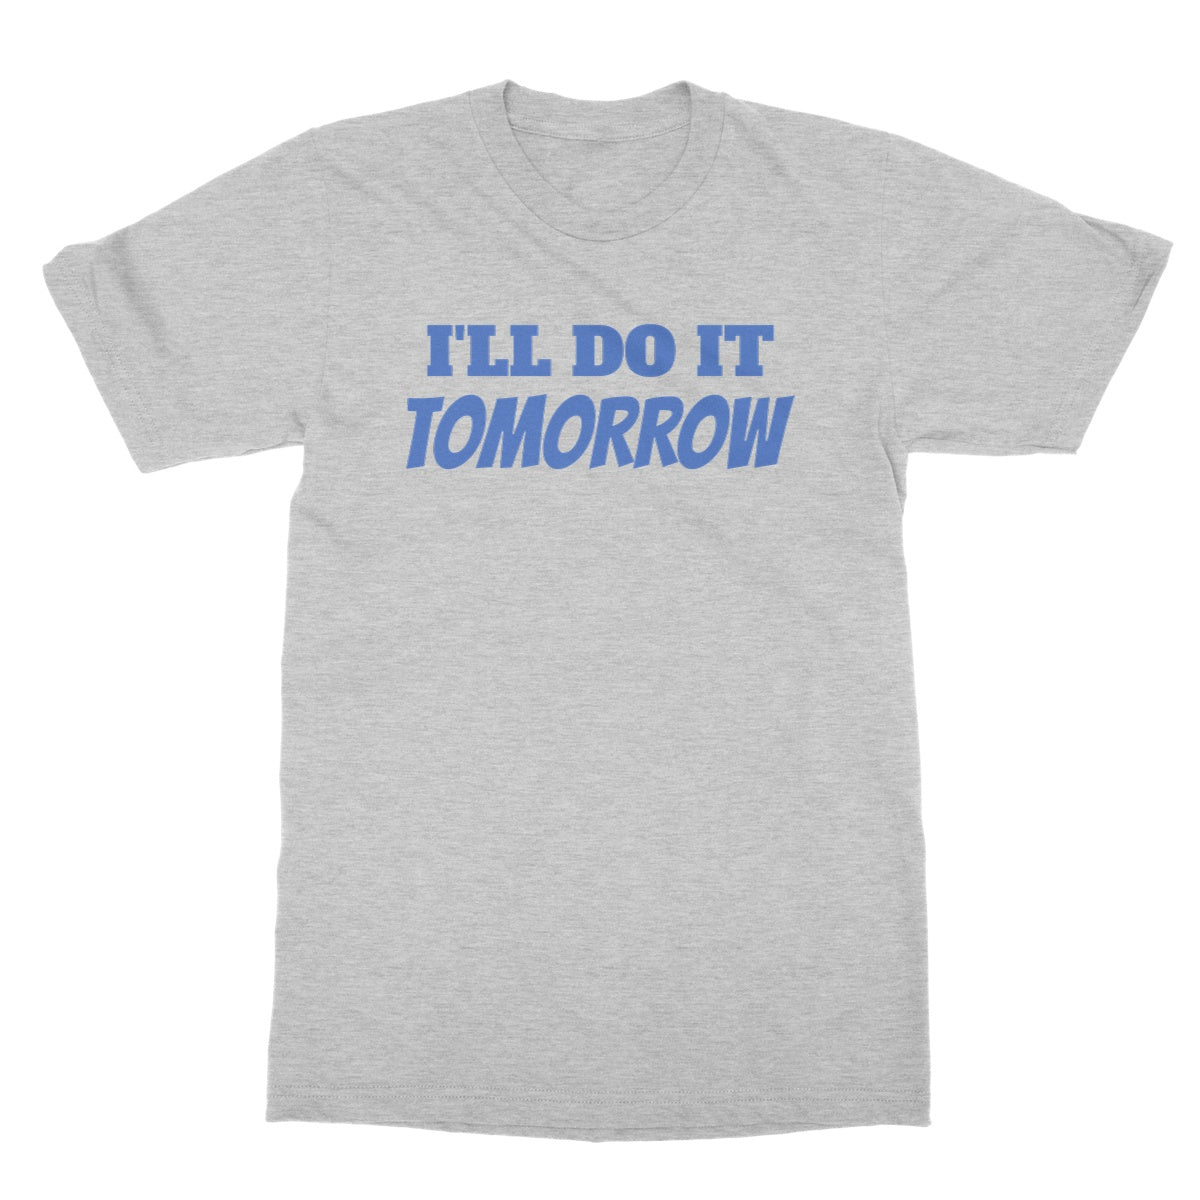 Ill do it tomorrow t shirt grey